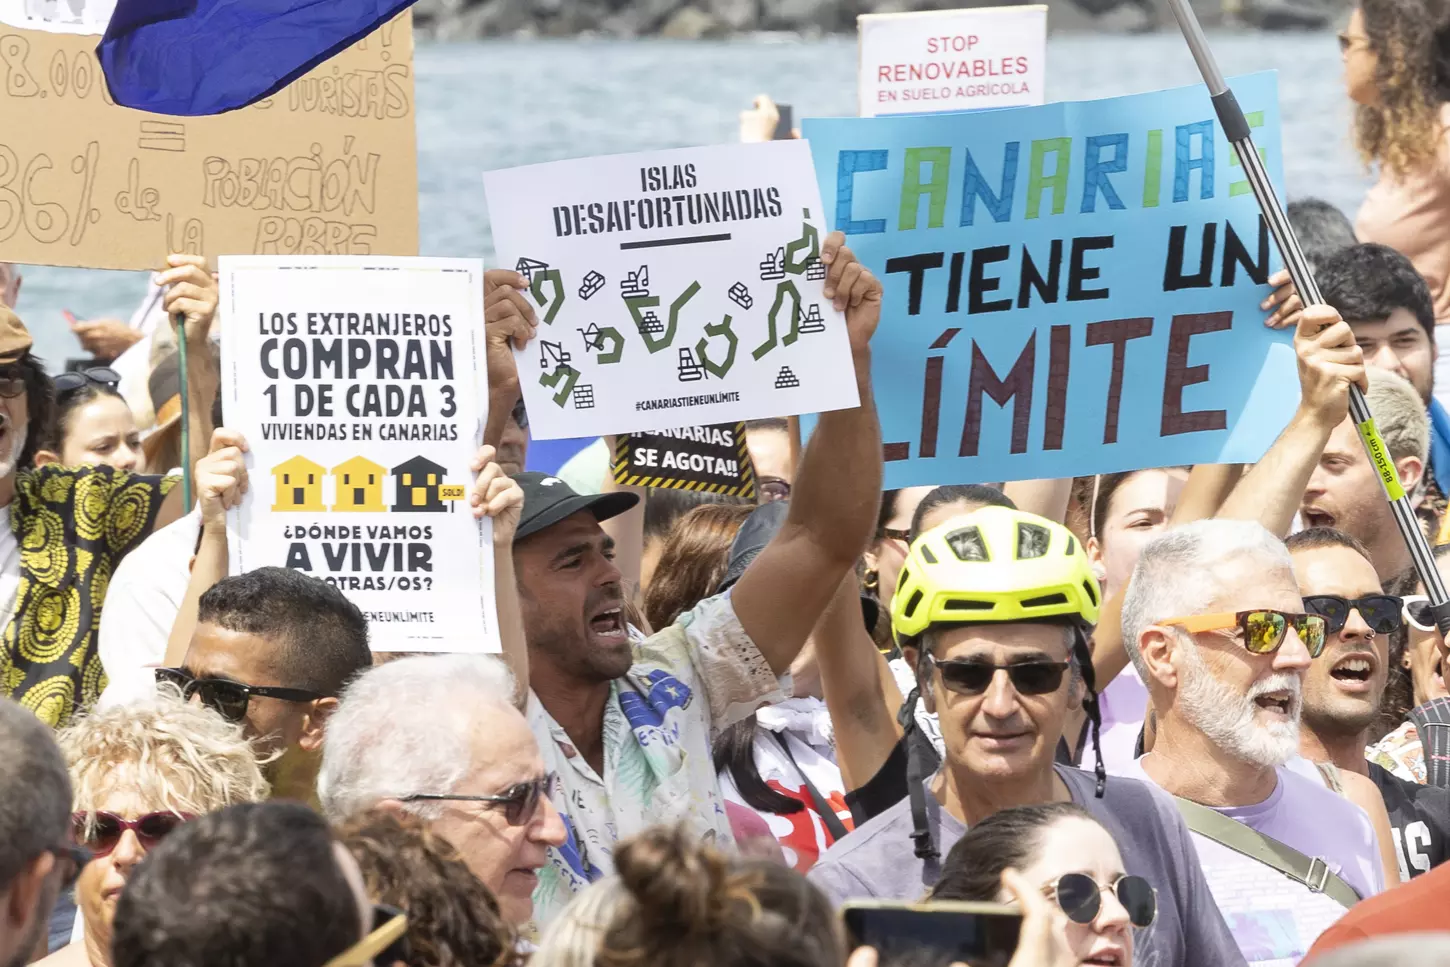 Una marea humana protesta en las calles contra el turismo de masas: Canarias tiene un límite